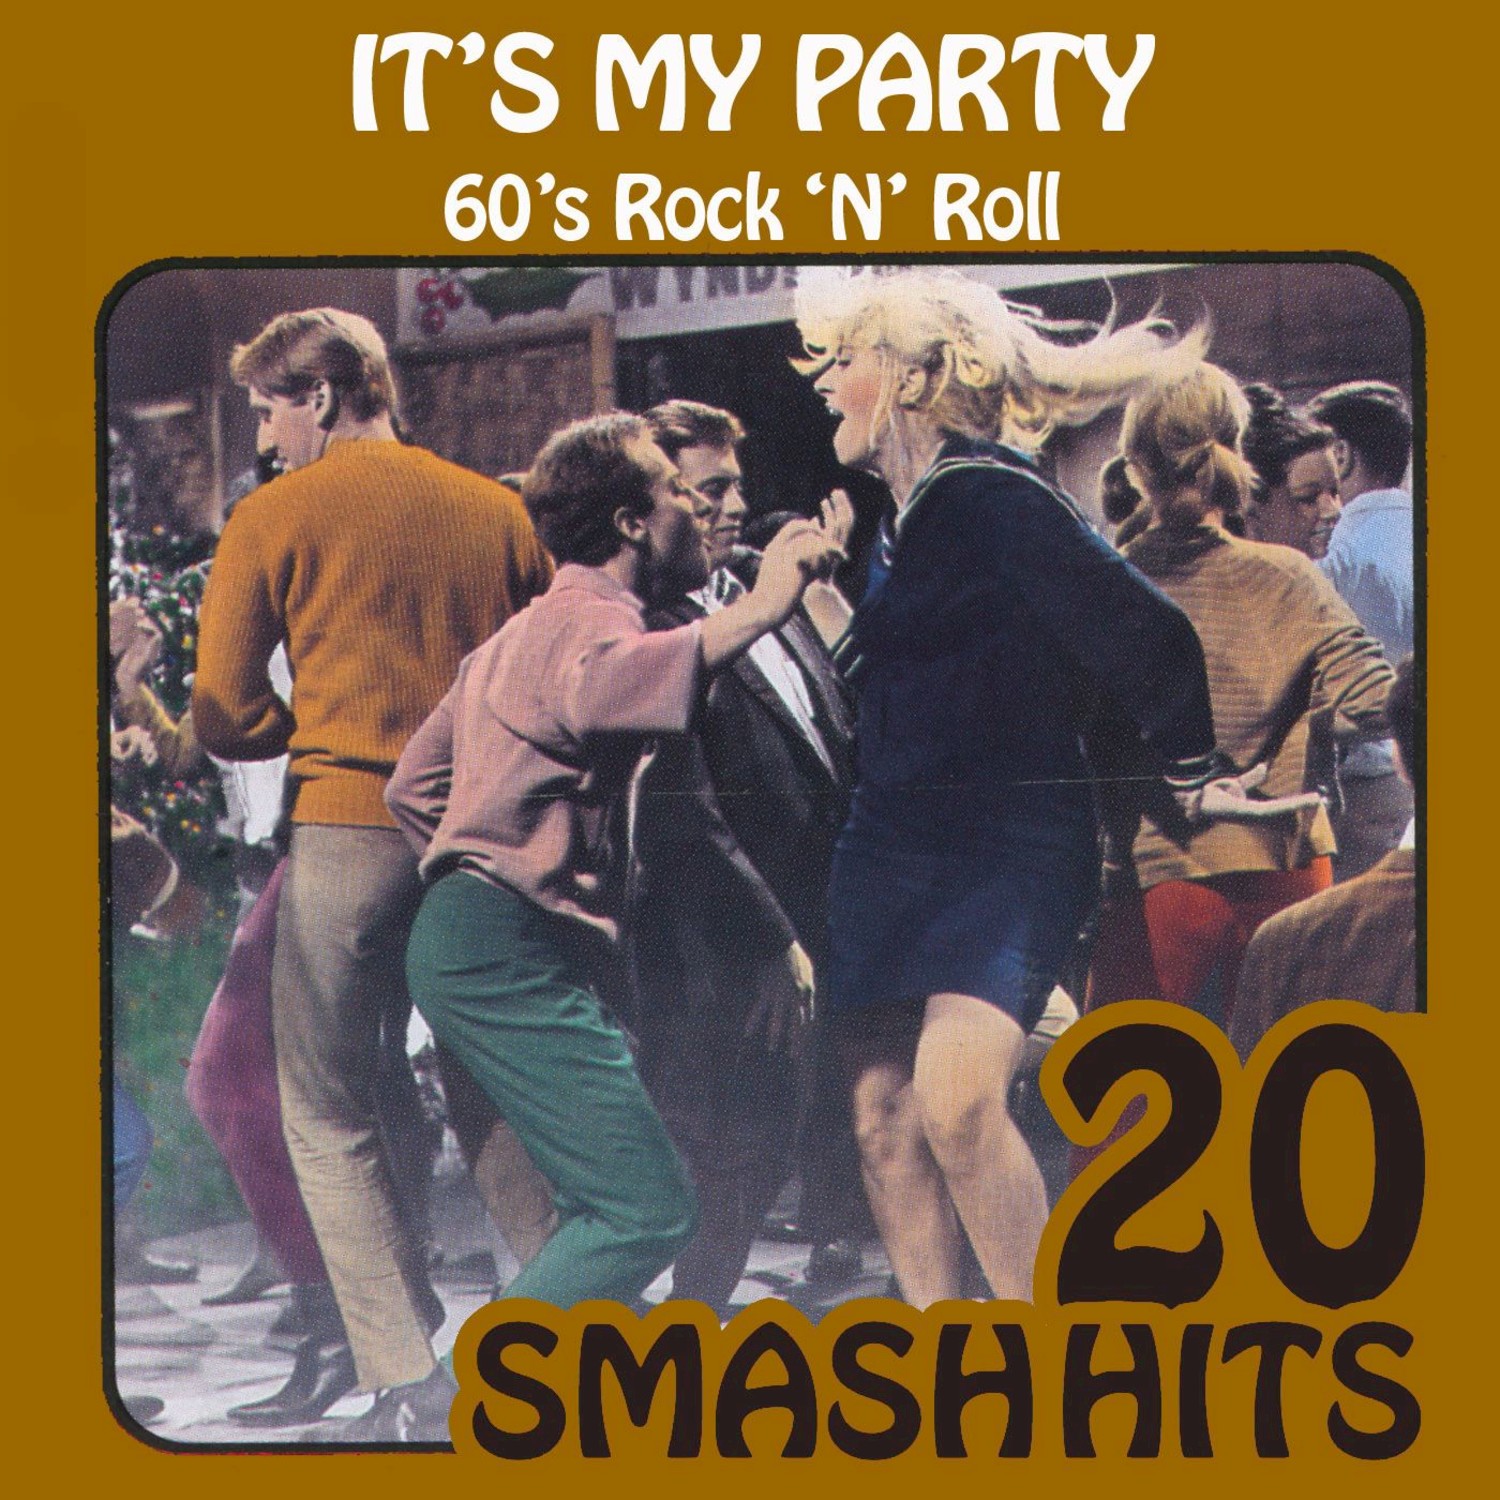 60's Rock 'N' Roll - It's My Party